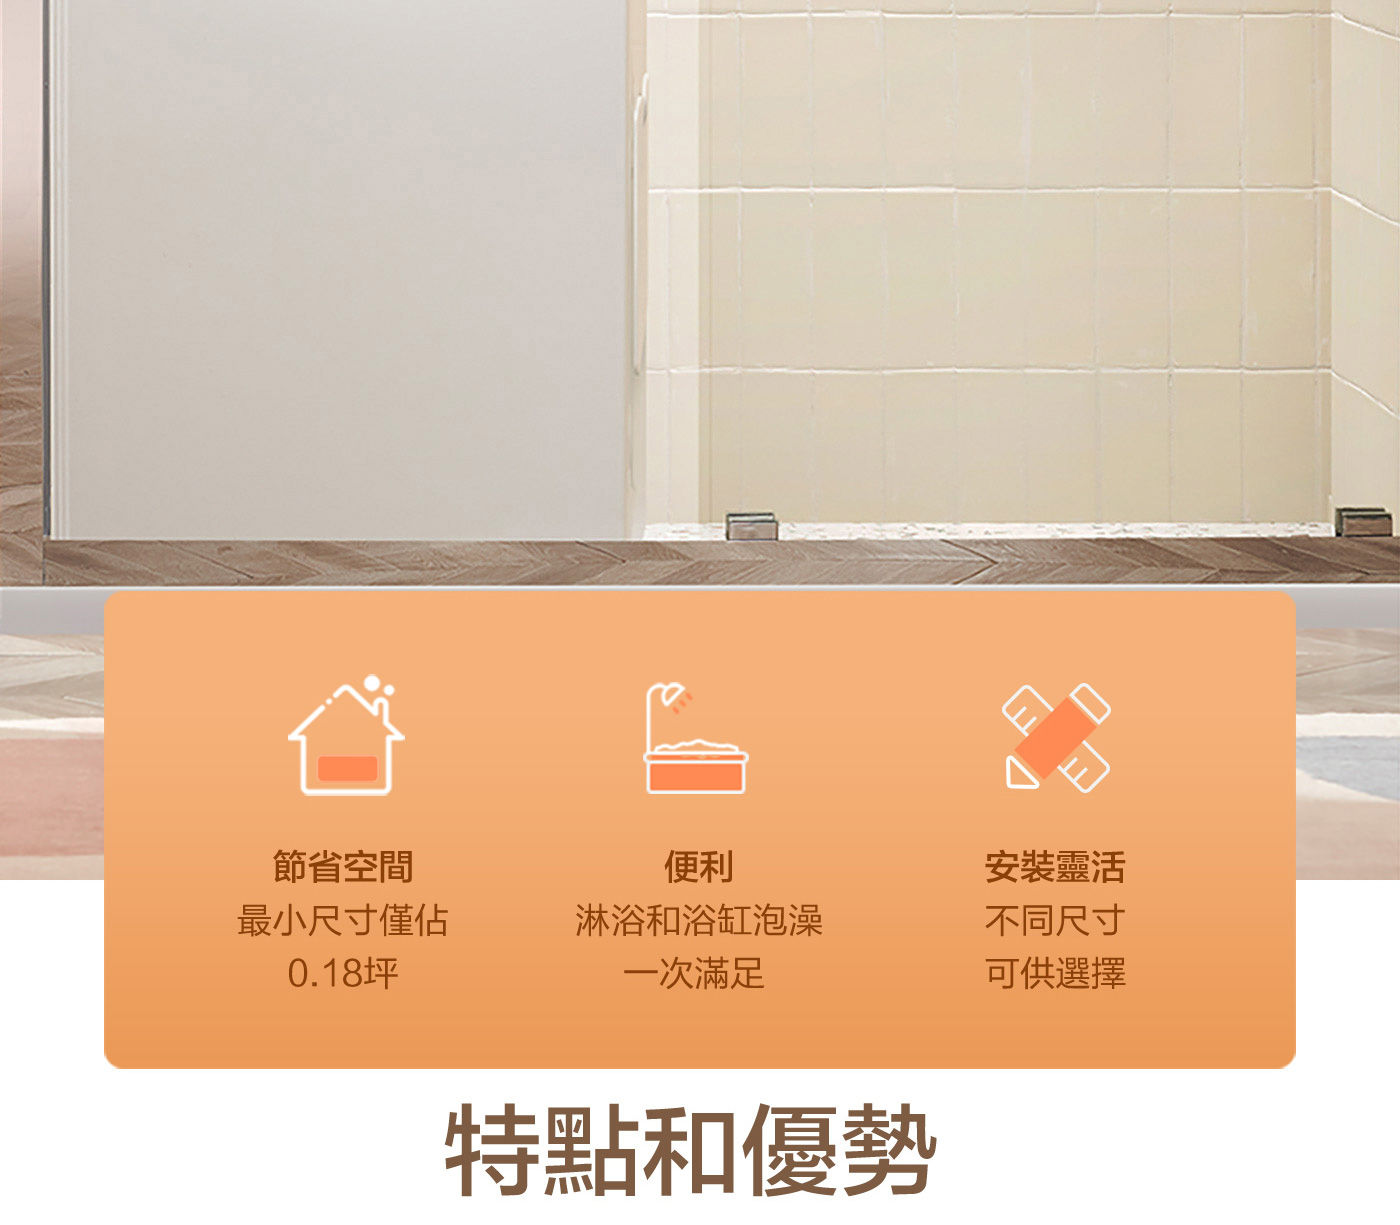 KOHLER 座臥式浴缸右角位 外排水節省空間/便利/安裝靈活